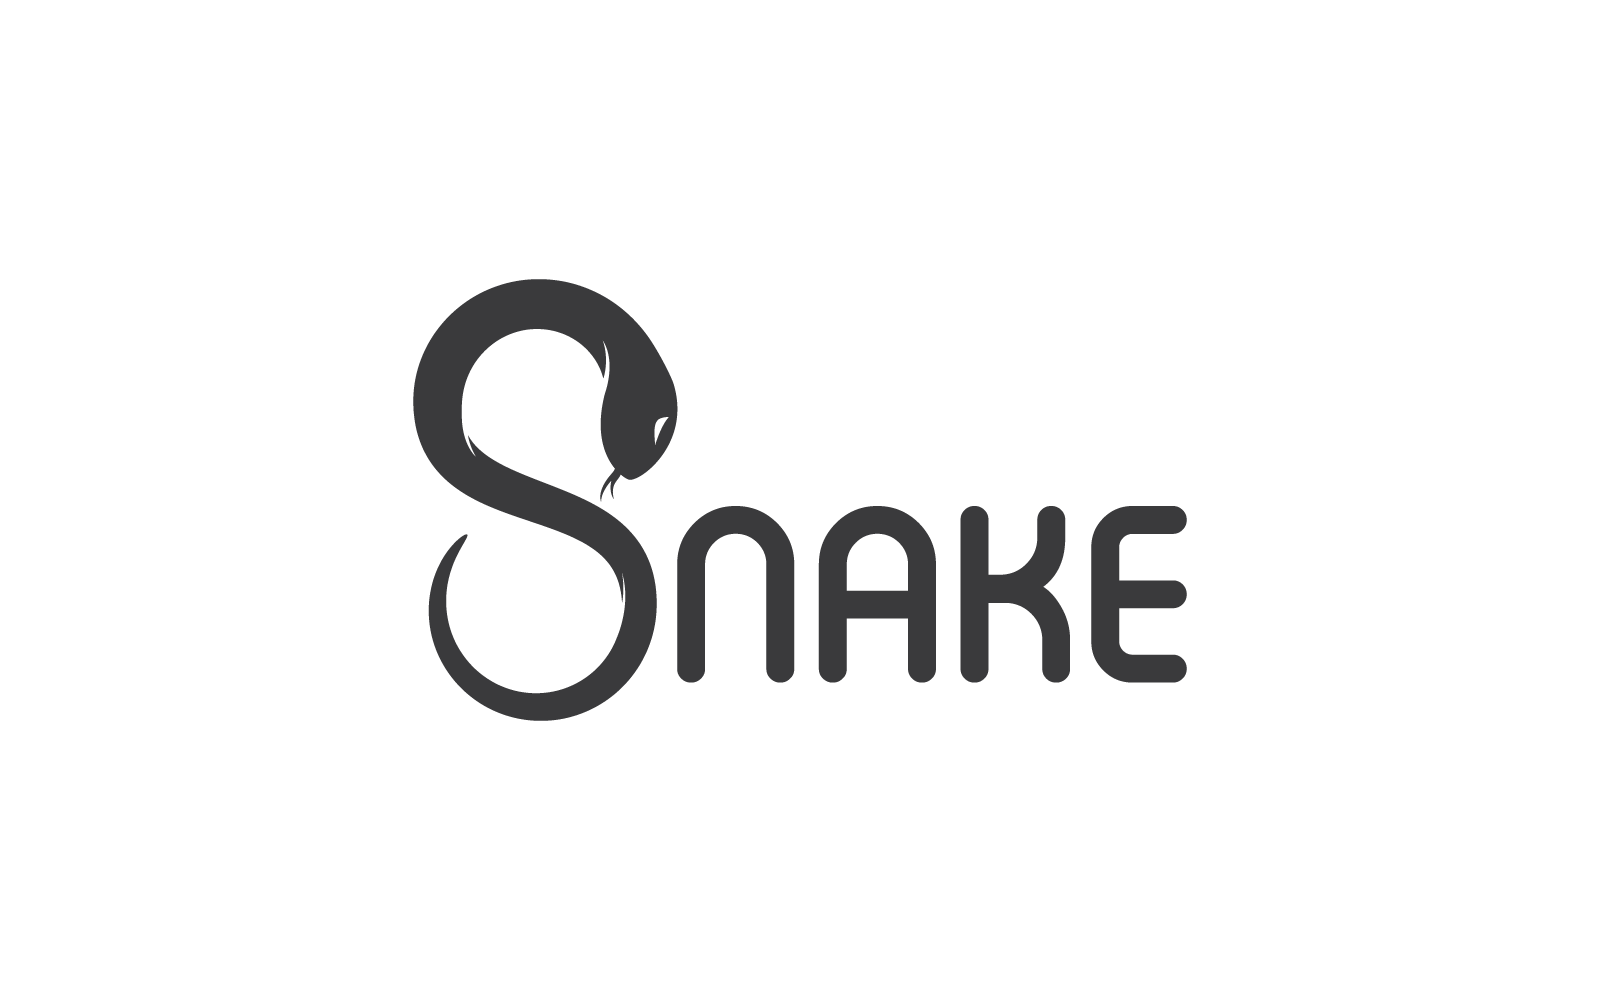 Snake logo vector icon template